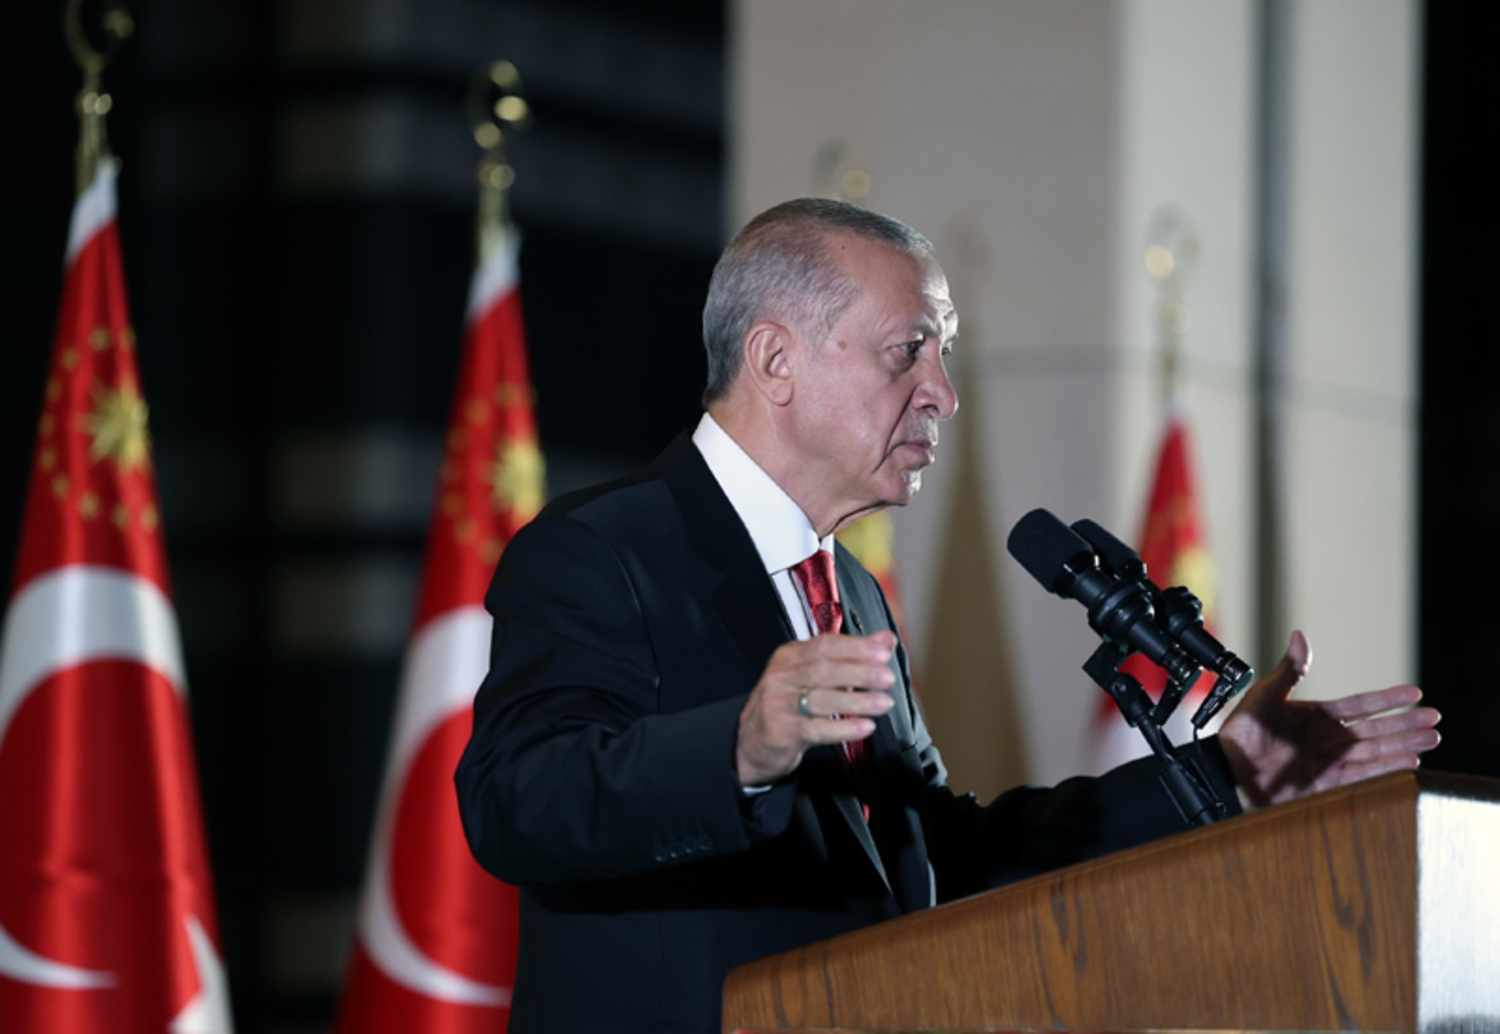 إردوغان: استقرار سوريا سيسرّع عودة اللاجئين